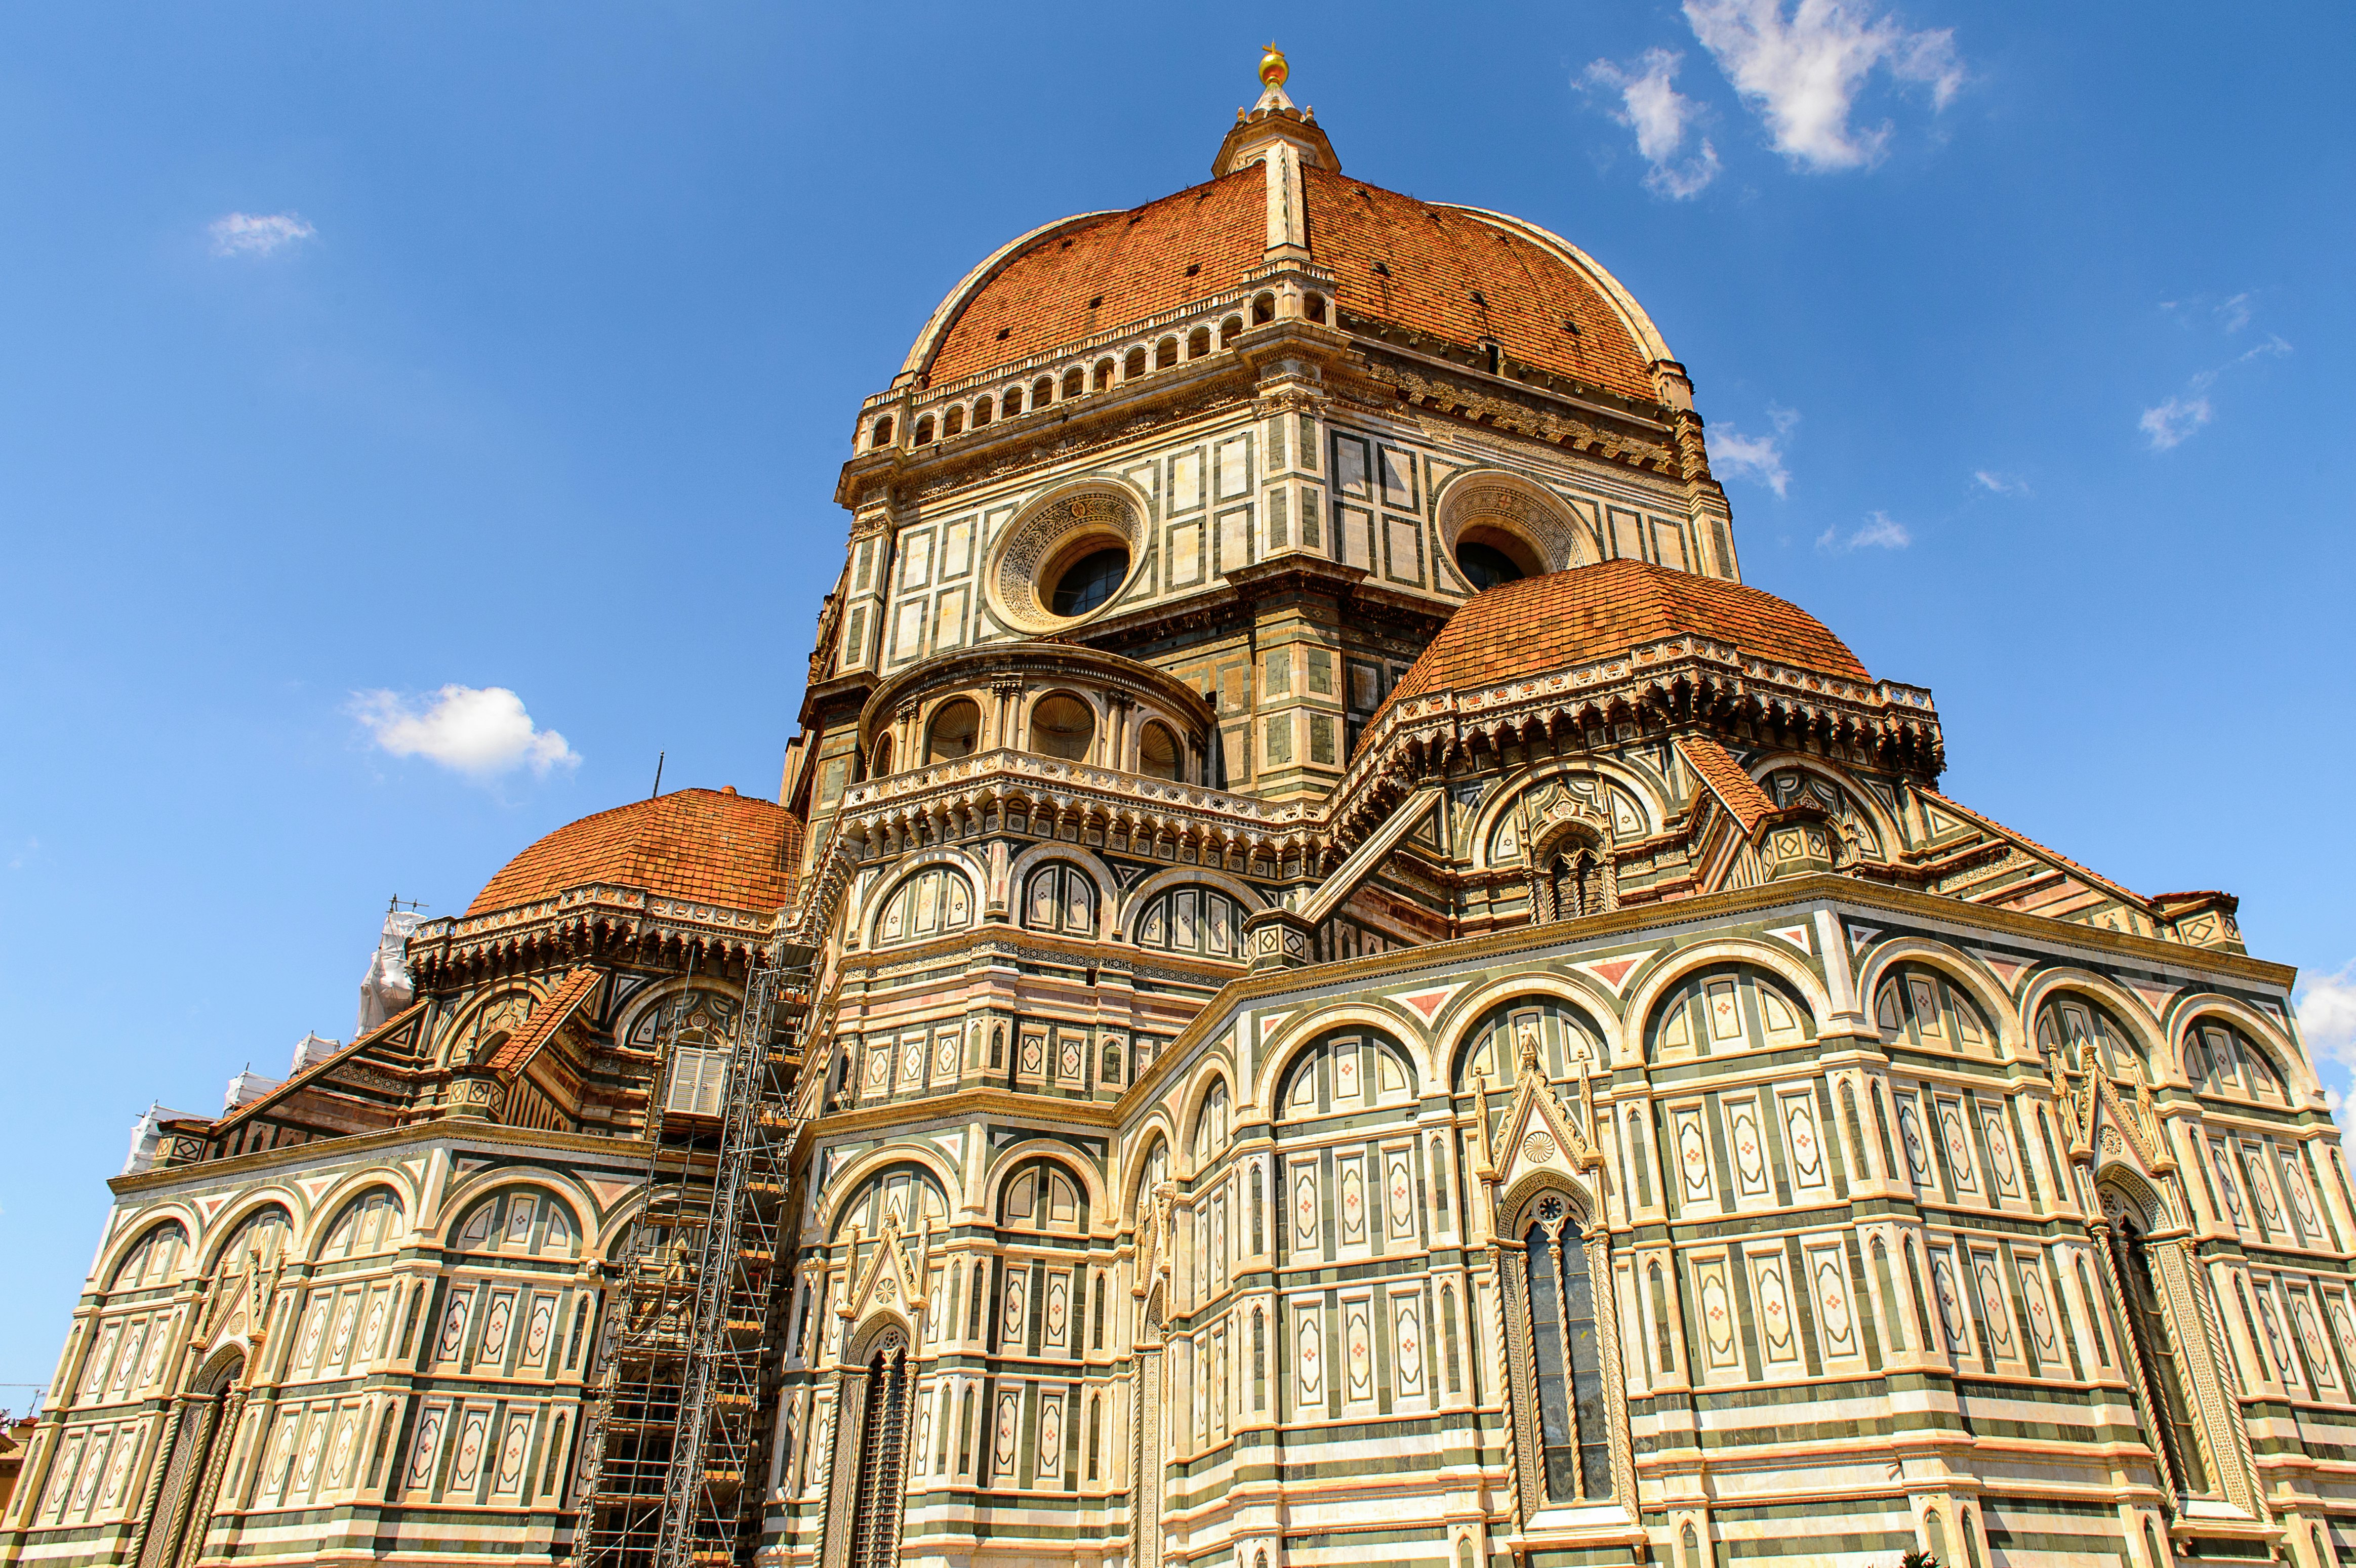 Billets Cathédrale de Florence (Duomo di Firenze) - Florence | Tiqets.com